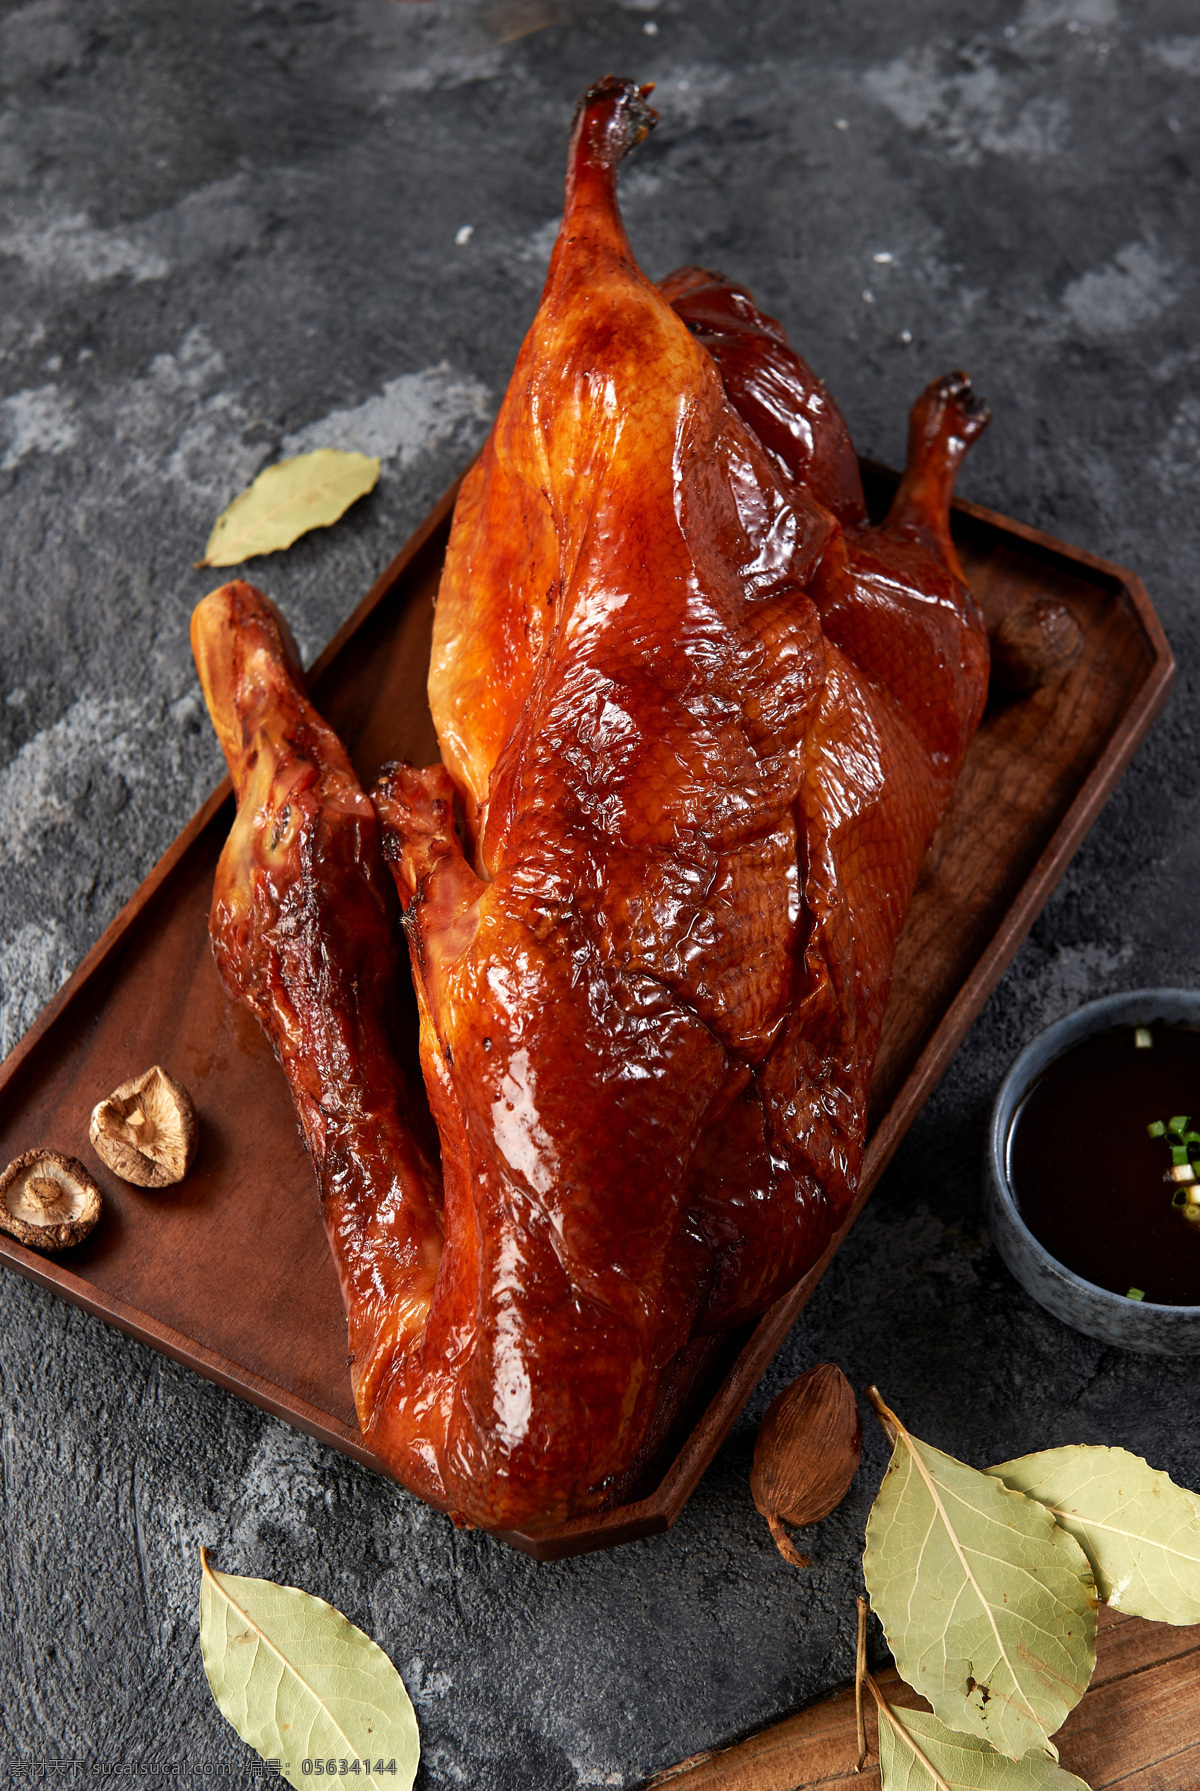 烤鸭图片 烤鸭 北京烤鸭 鸭子 烧鸭 餐饮美食 传统美食